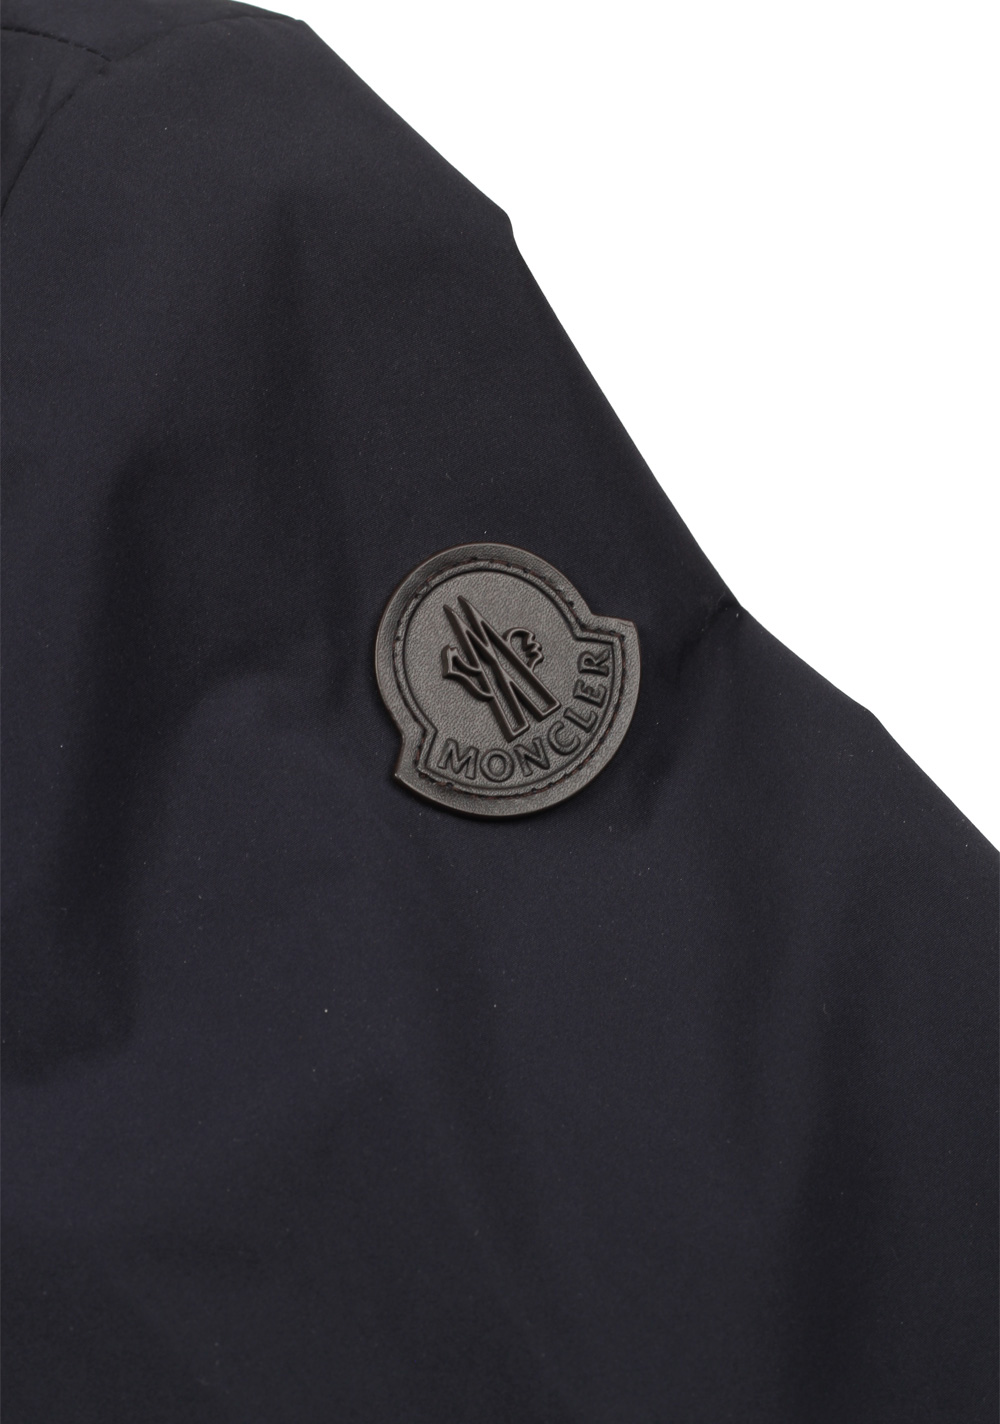 Moncler Blue Ecaillon Layered Shell Jacket Coat Size 2 / M / 48 / 38 U.S. | Costume Limité